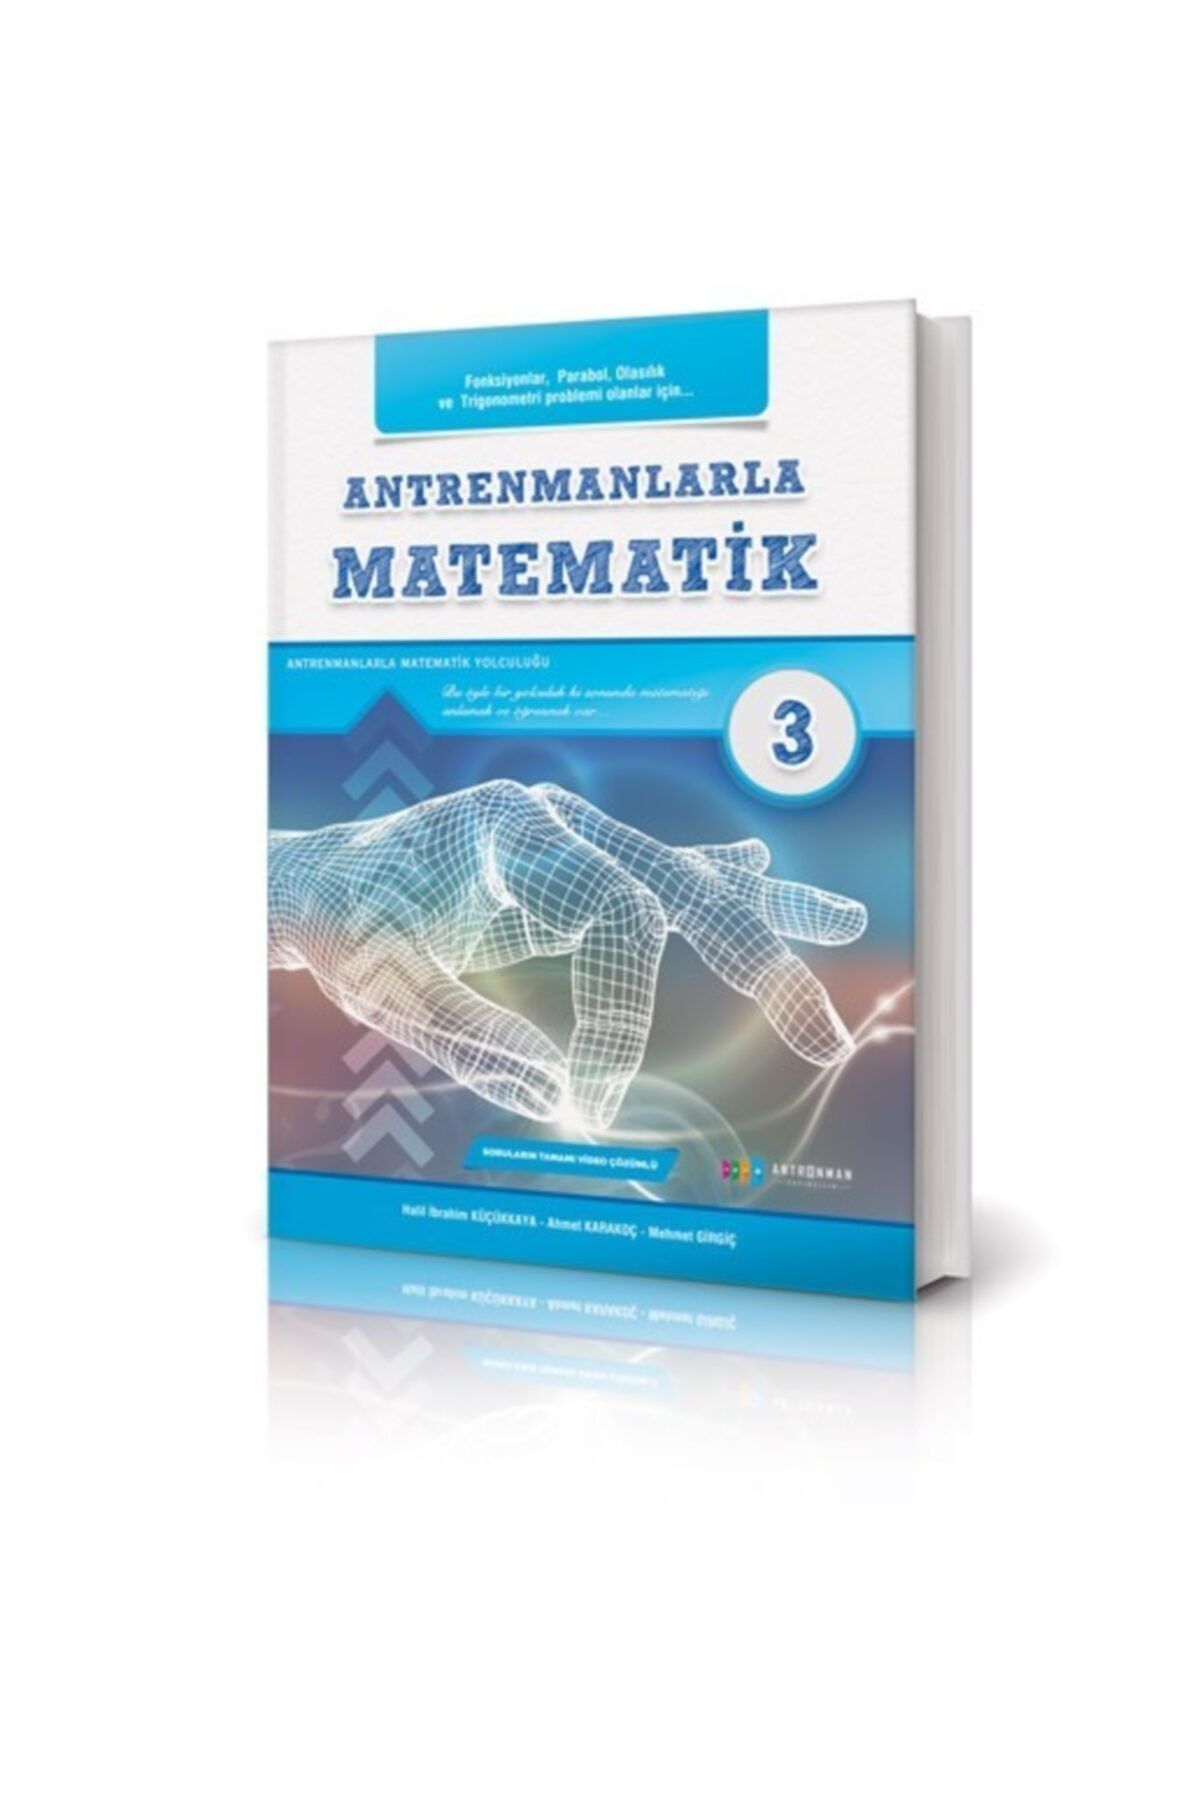 Antrenman Yayınları Antrenmanlarla Matematik-3